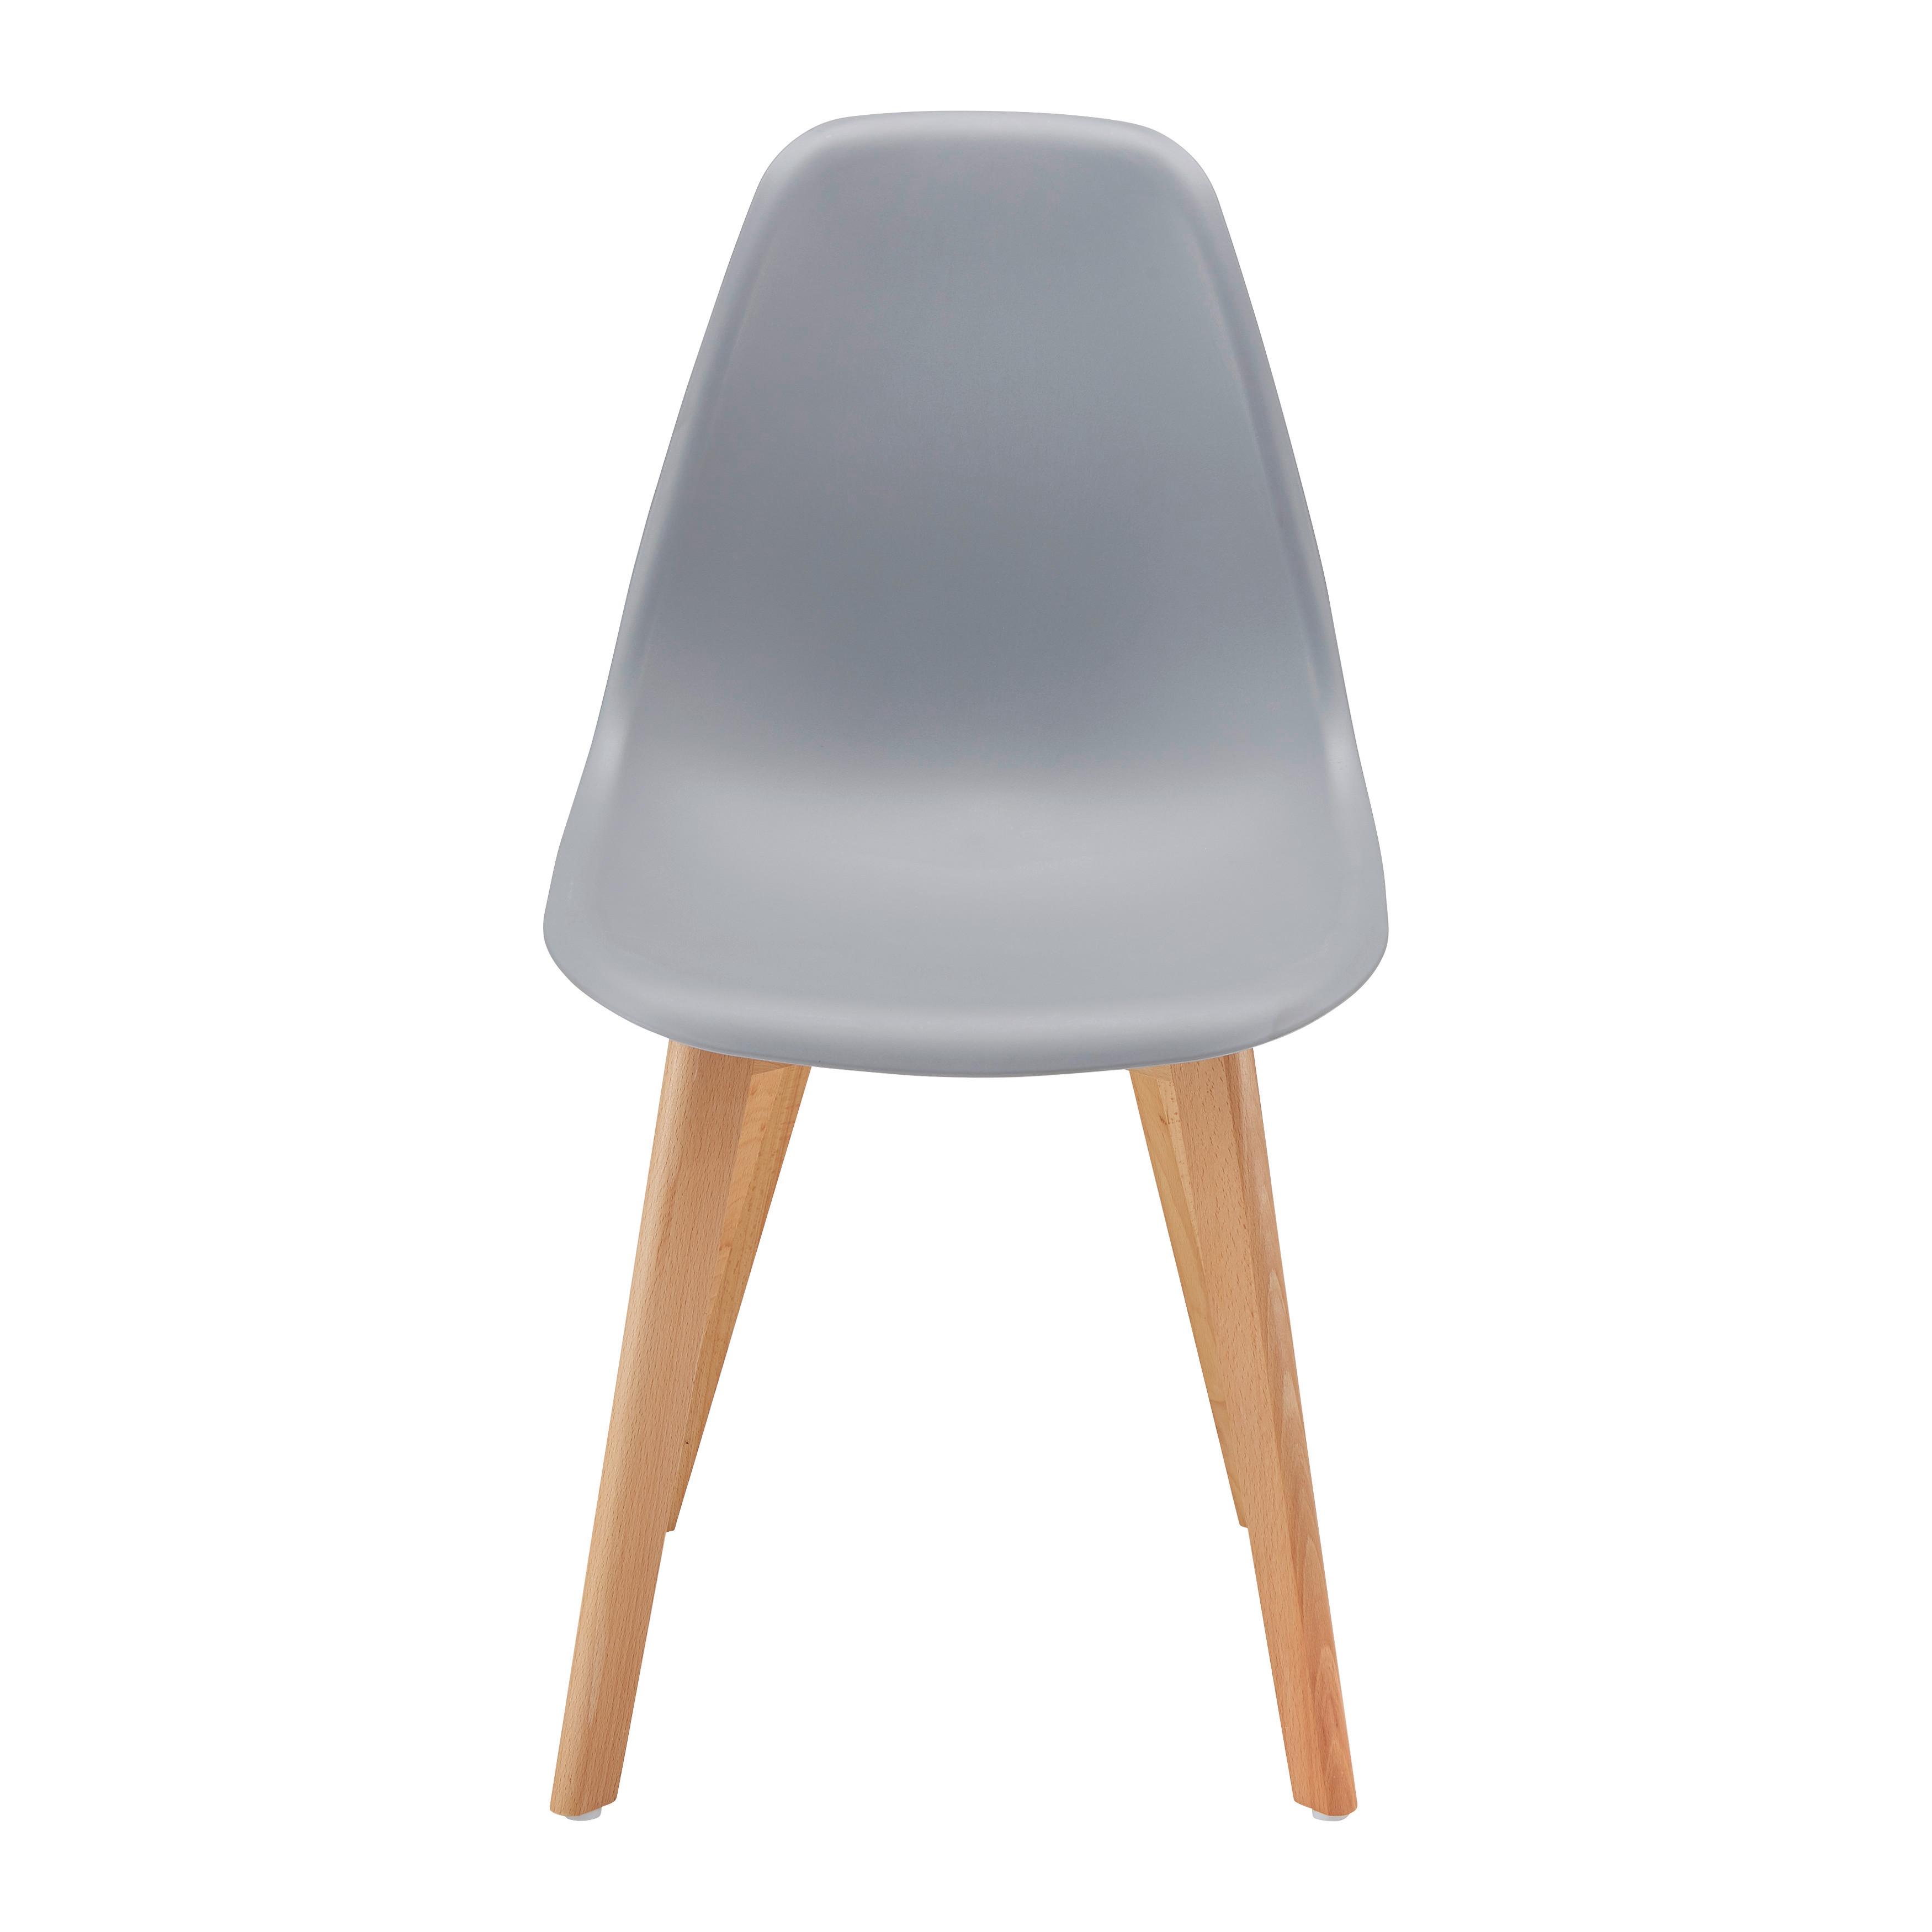 Jídelní Židle Frieda - šedá/barvy buku, Moderní, dřevo/plast (54/87,50/46cm) - Modern Living